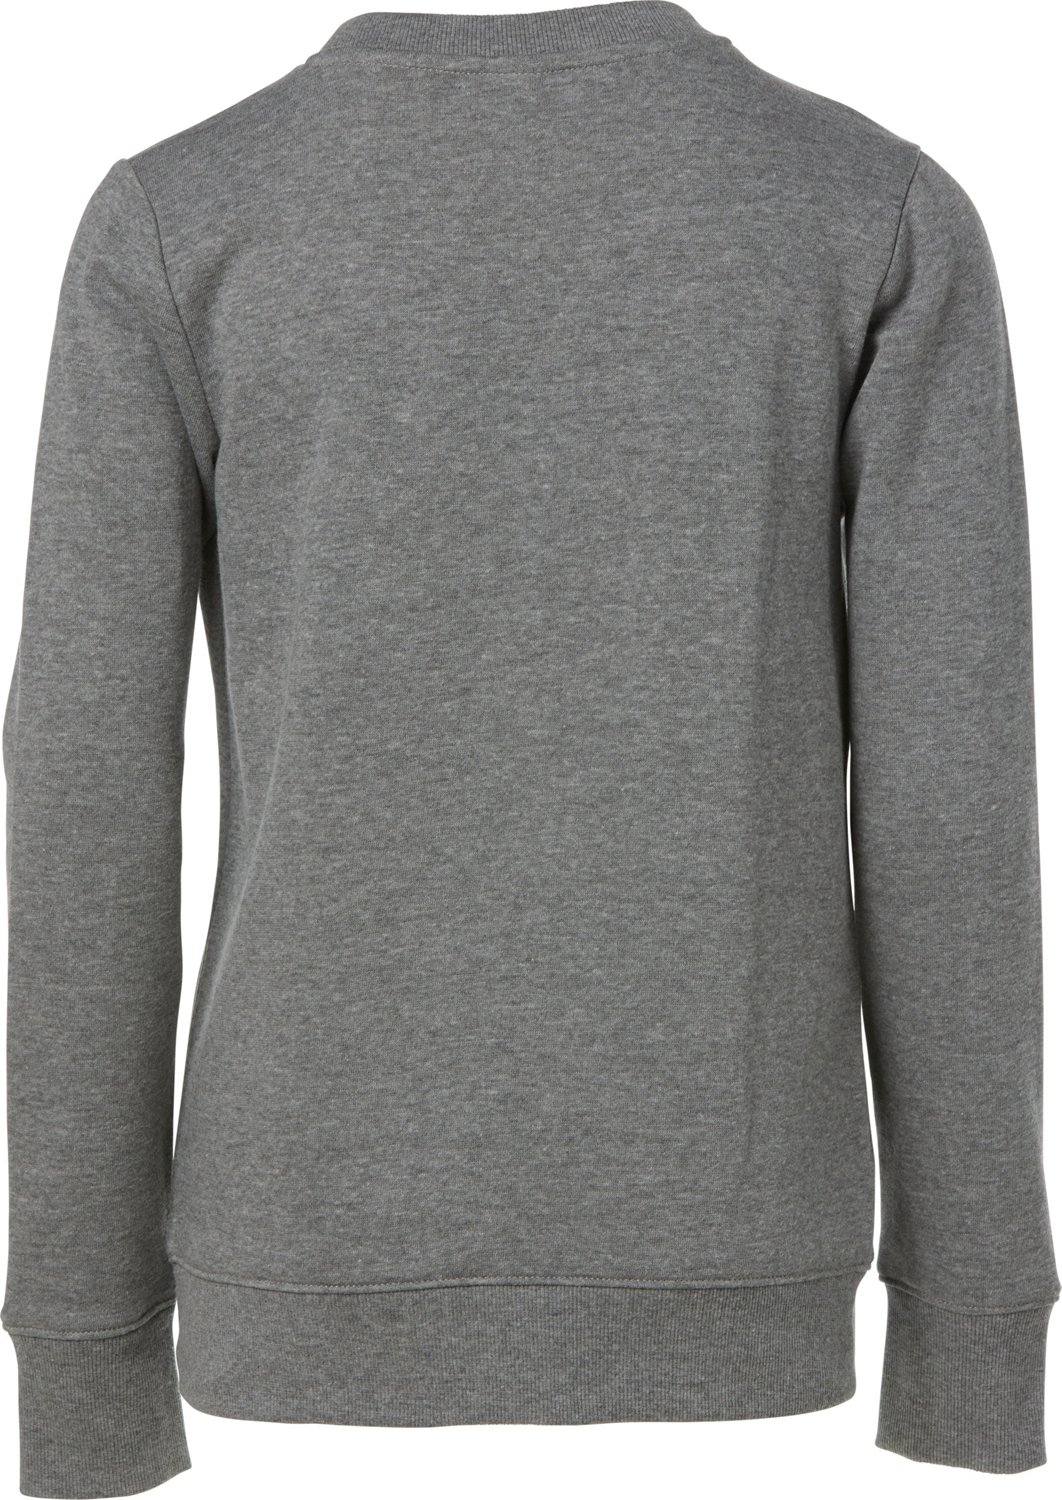 BCG Boys’ Lifestyle Beast Level Cotton Fleece Sweatshirt | Academy